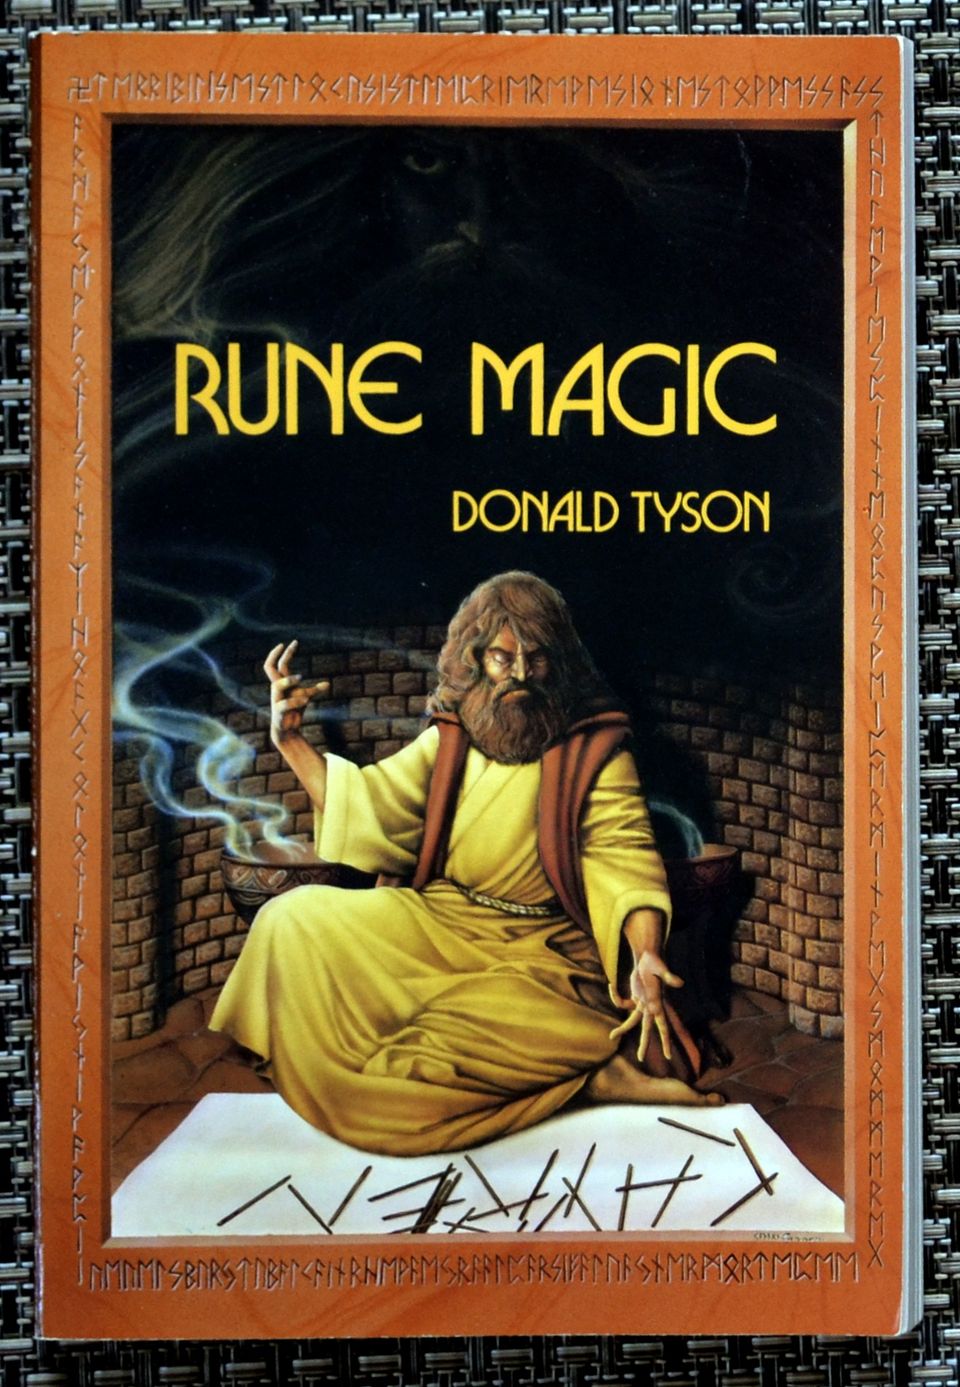 Rune Magic, Donald Tyson, riimu kirja